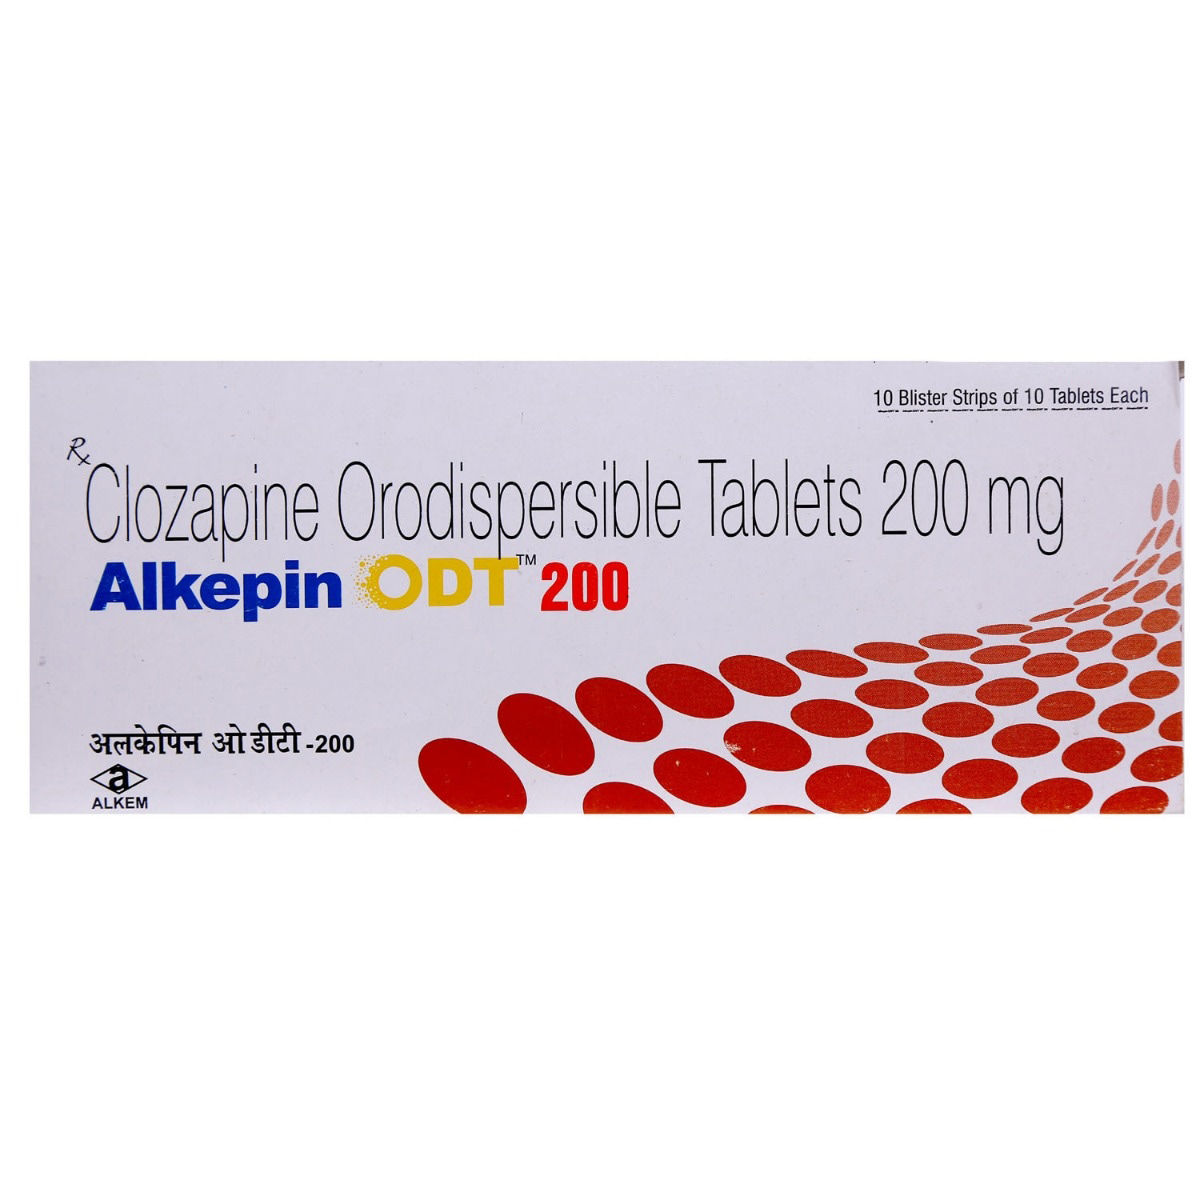 Alkepin ODT 200 Tablet 10's, Pack of 10 TabletS